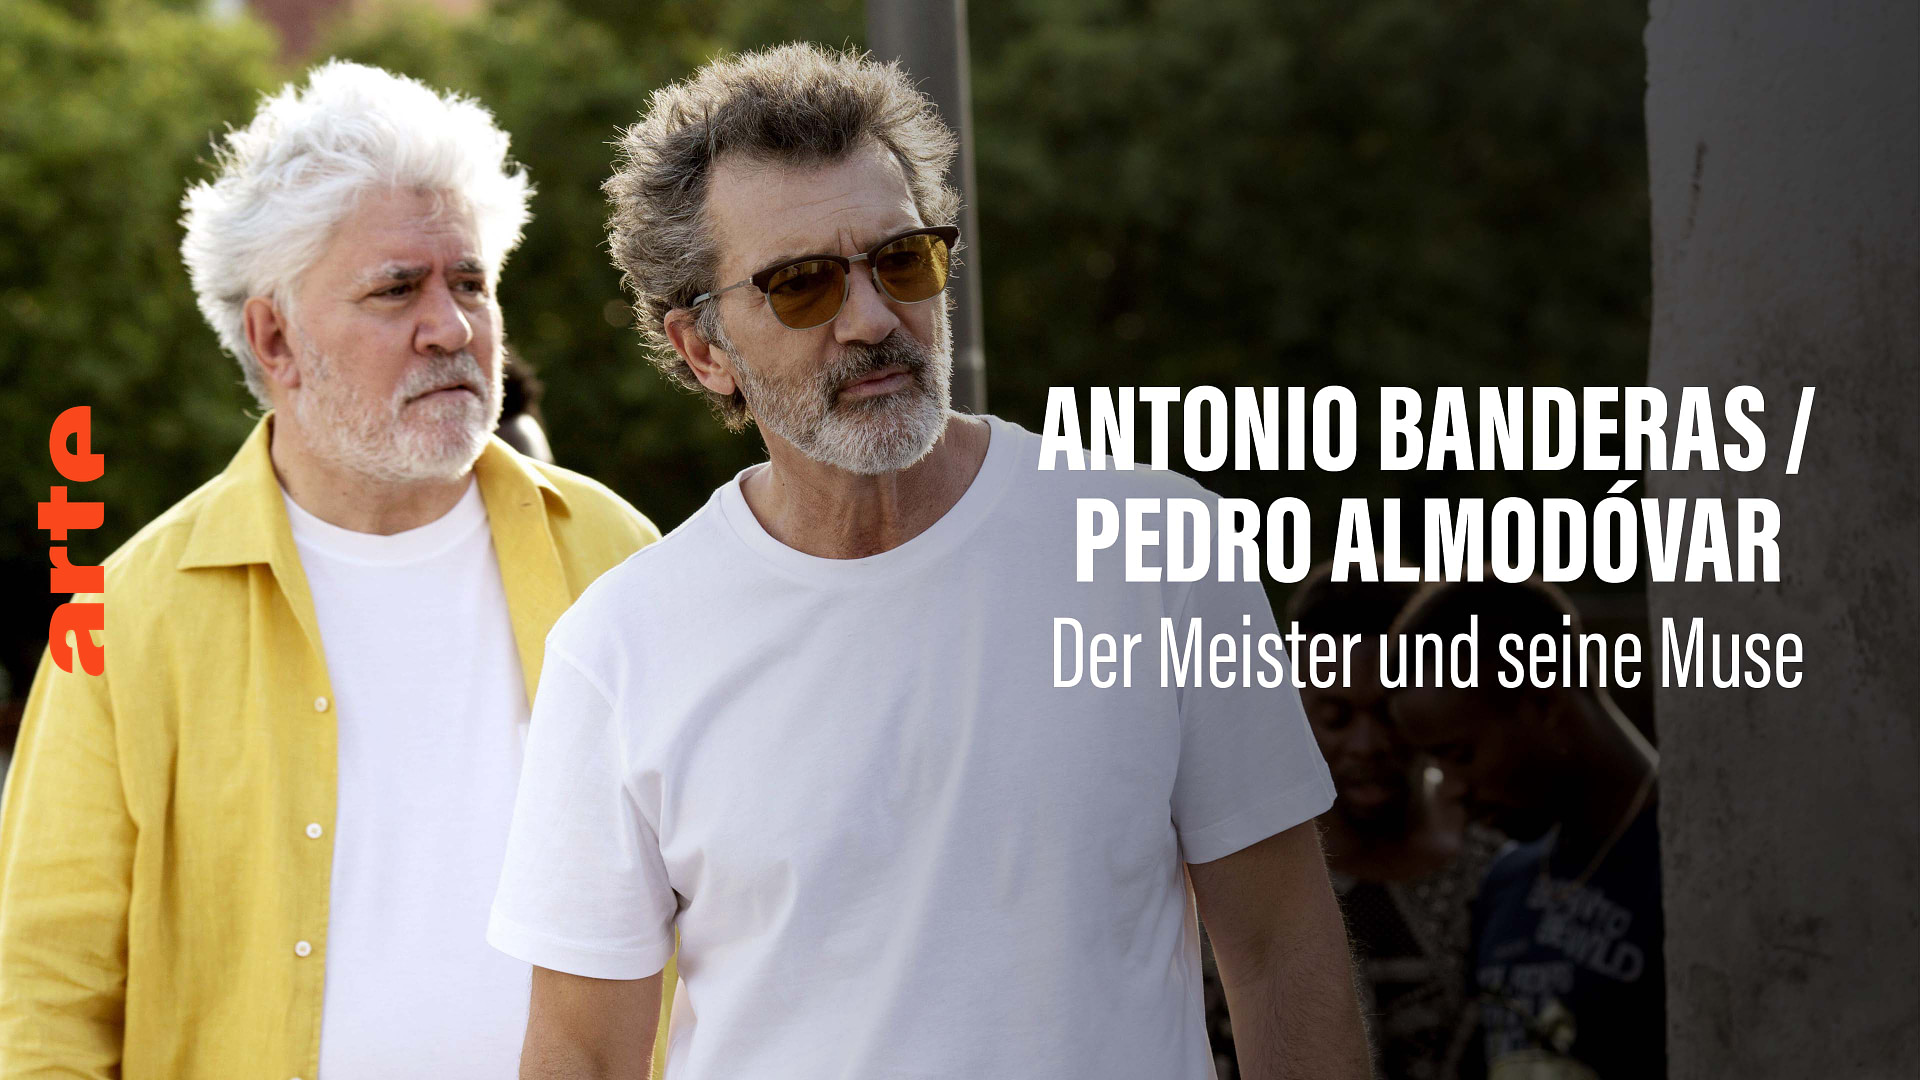 Antonio Banderas / Pedro Almodovar